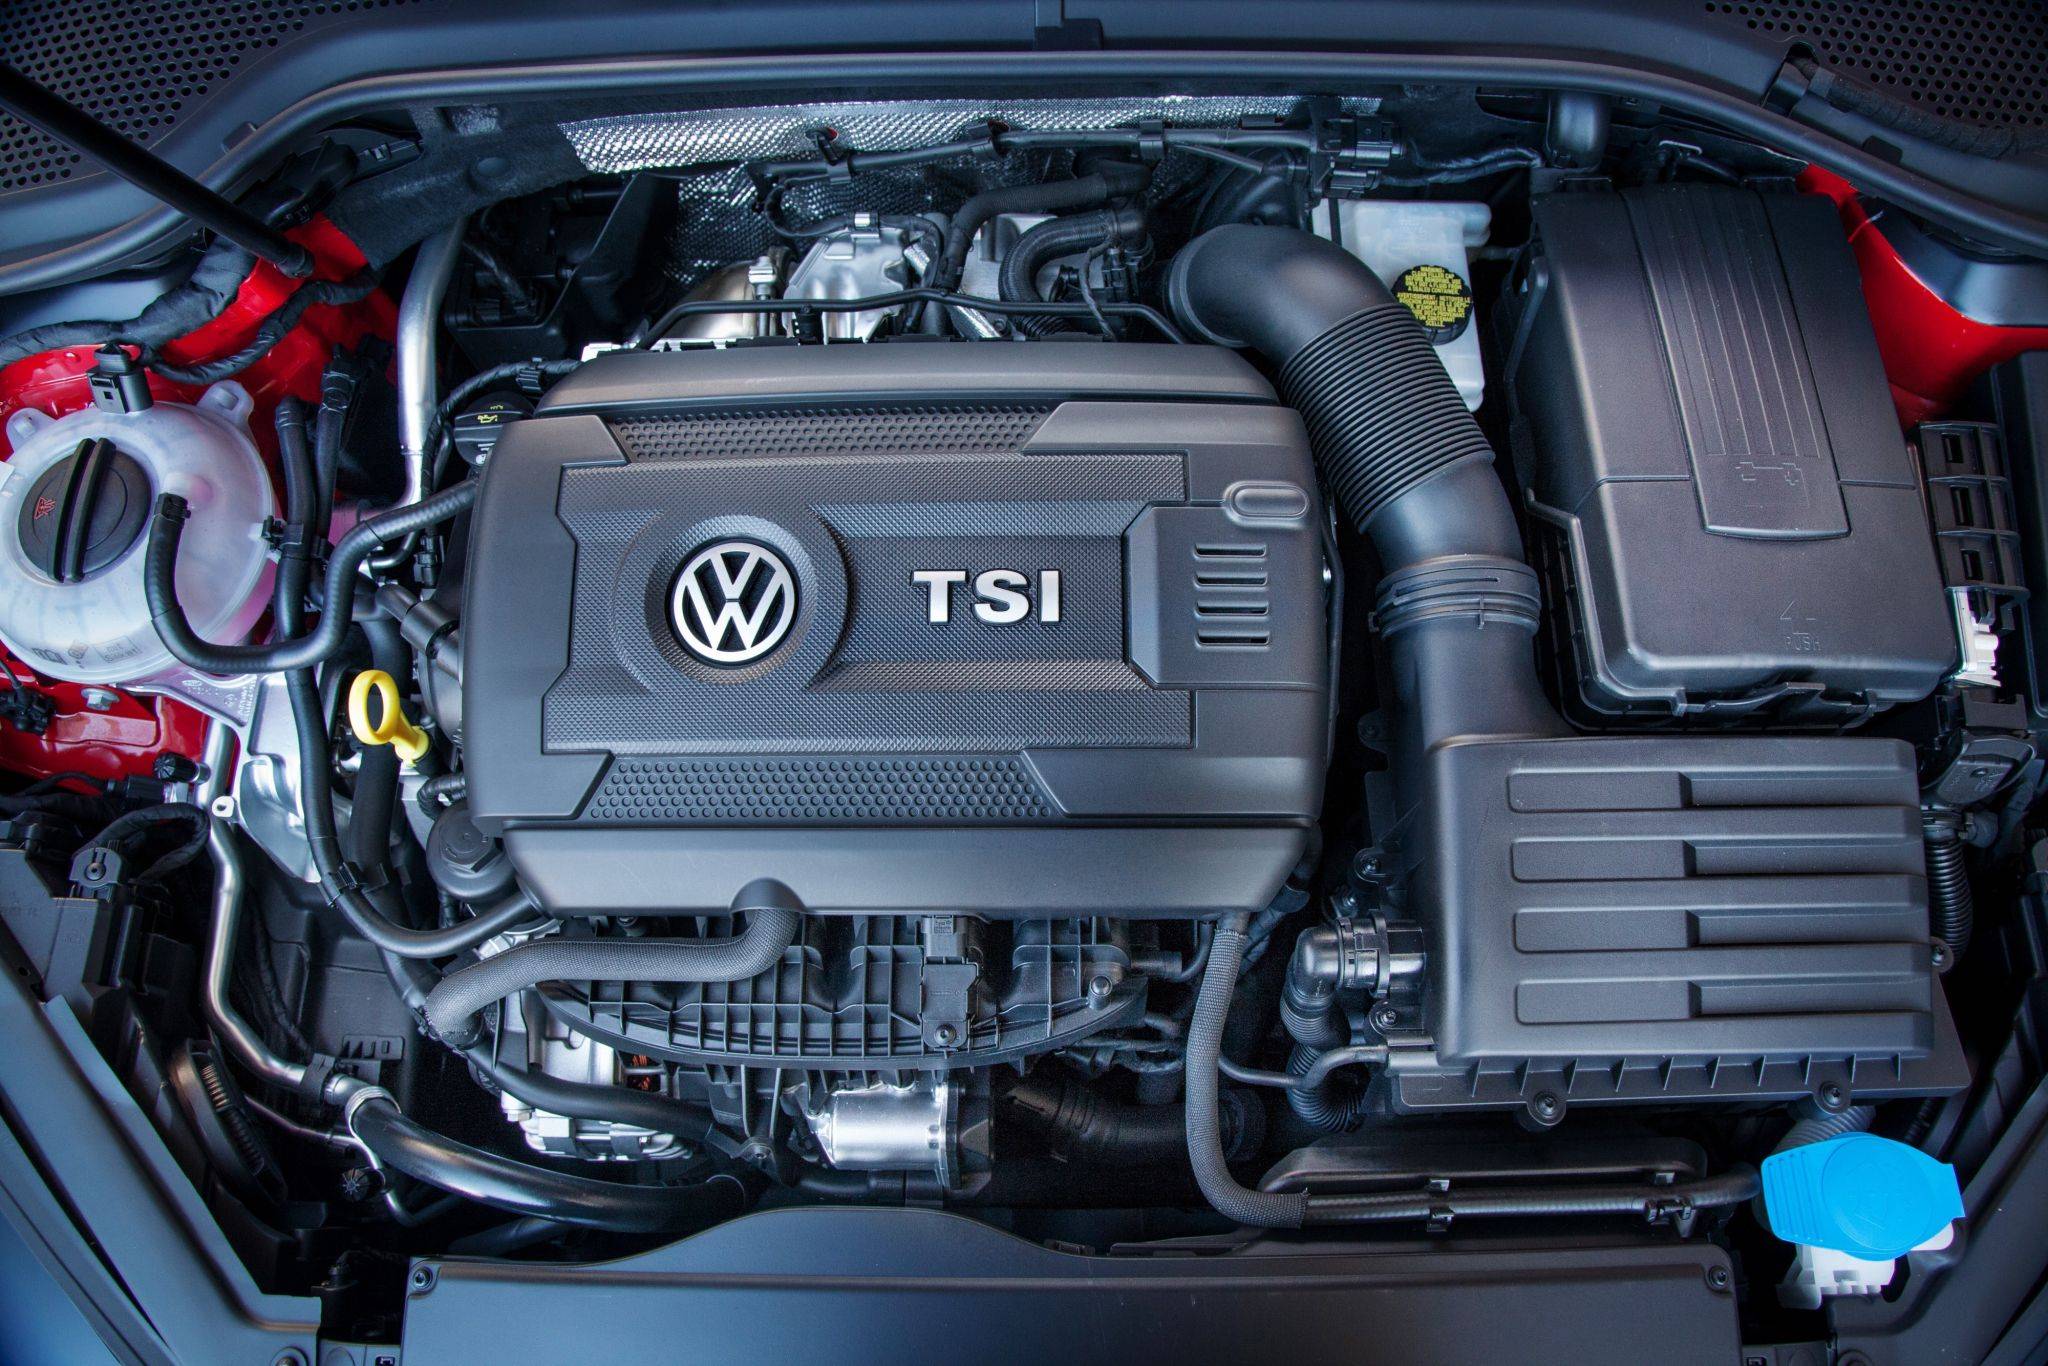 Что такое двигатель TSI